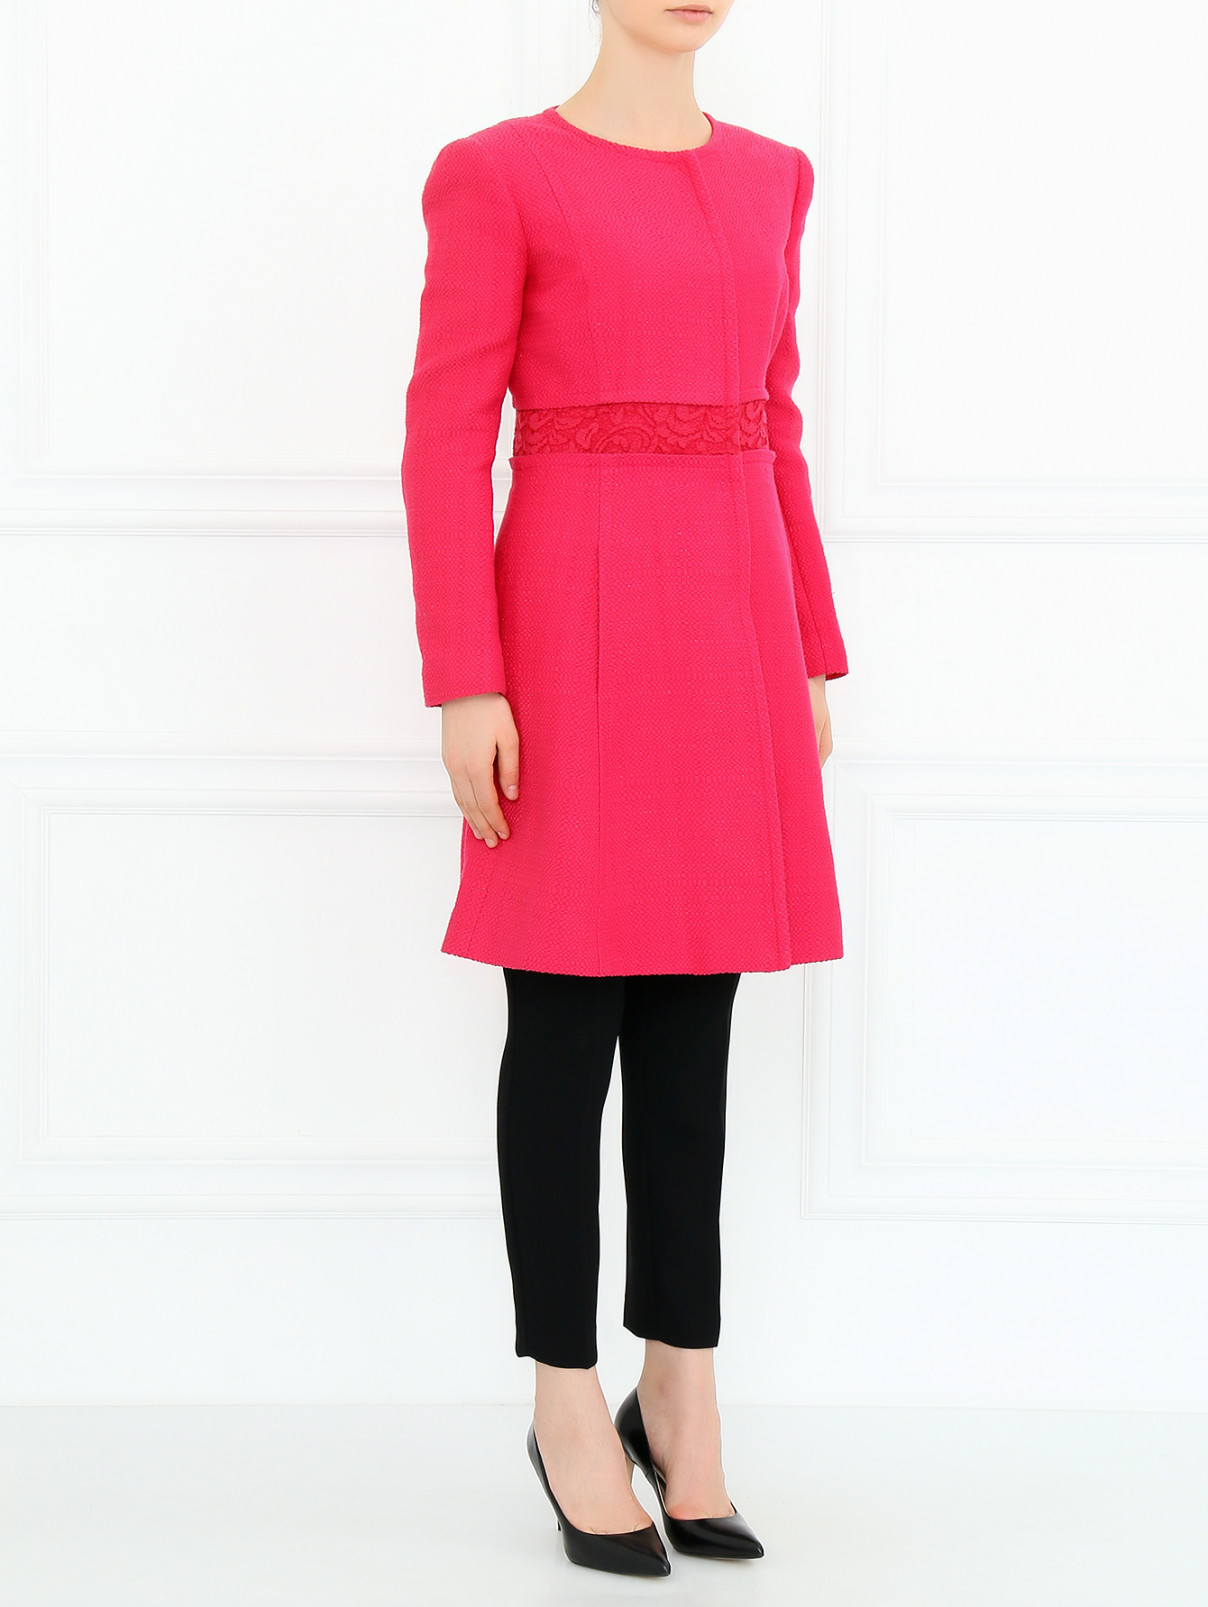 Пальто из хлопка с боковыми карманами Alberta Ferretti  –  Модель Общий вид  – Цвет:  Фиолетовый